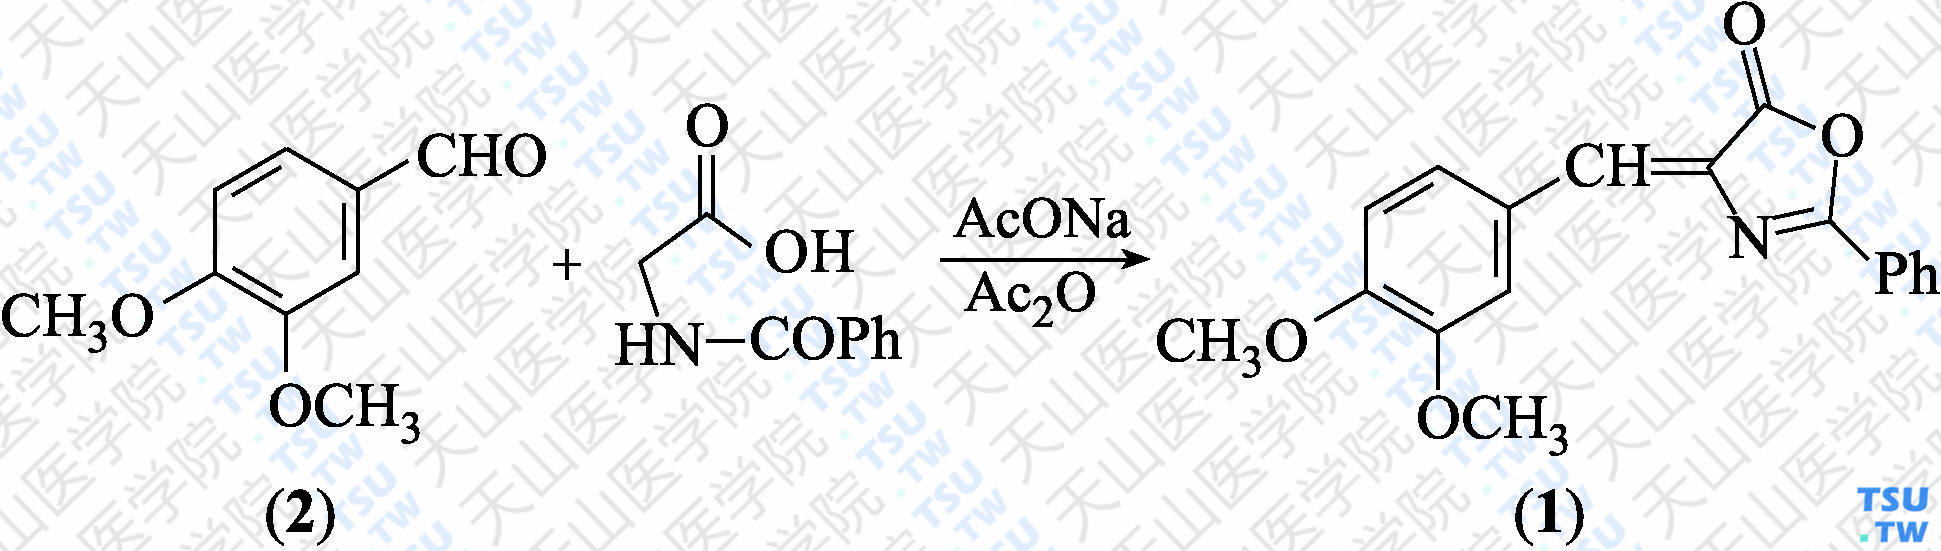 4-（3，4-二甲氧苯亚甲基）-2-苯基噁唑-5（4<i>H</i>）-酮（分子式：C<sub>18</sub>H<sub>15</sub>NO<sub>4</sub>）的合成方法路线及其结构式